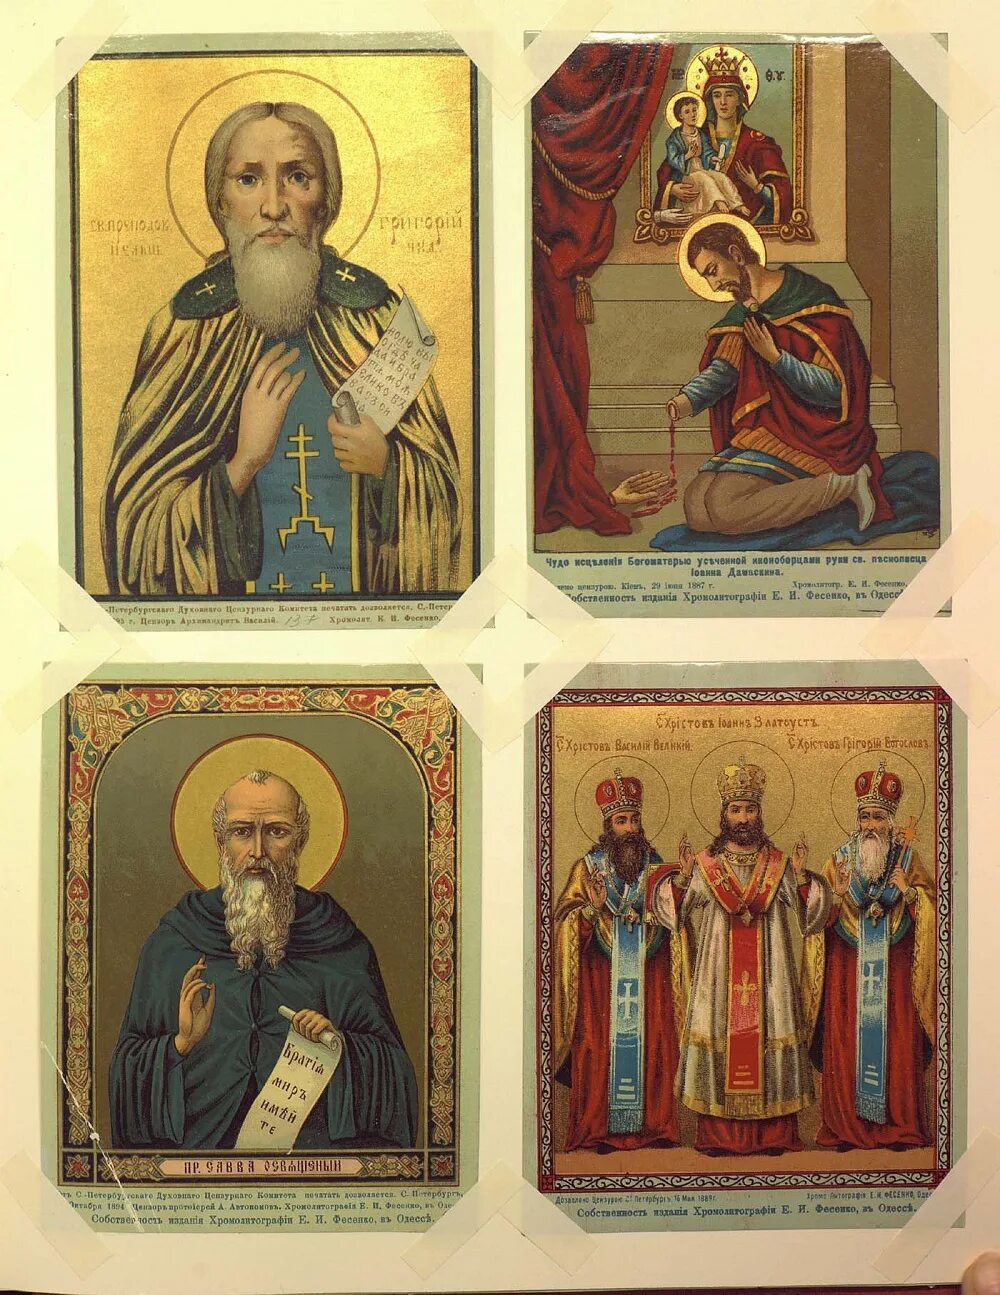 Иконы хромолитография Фесенко. Образы святых на иконах. Описание ликов святых